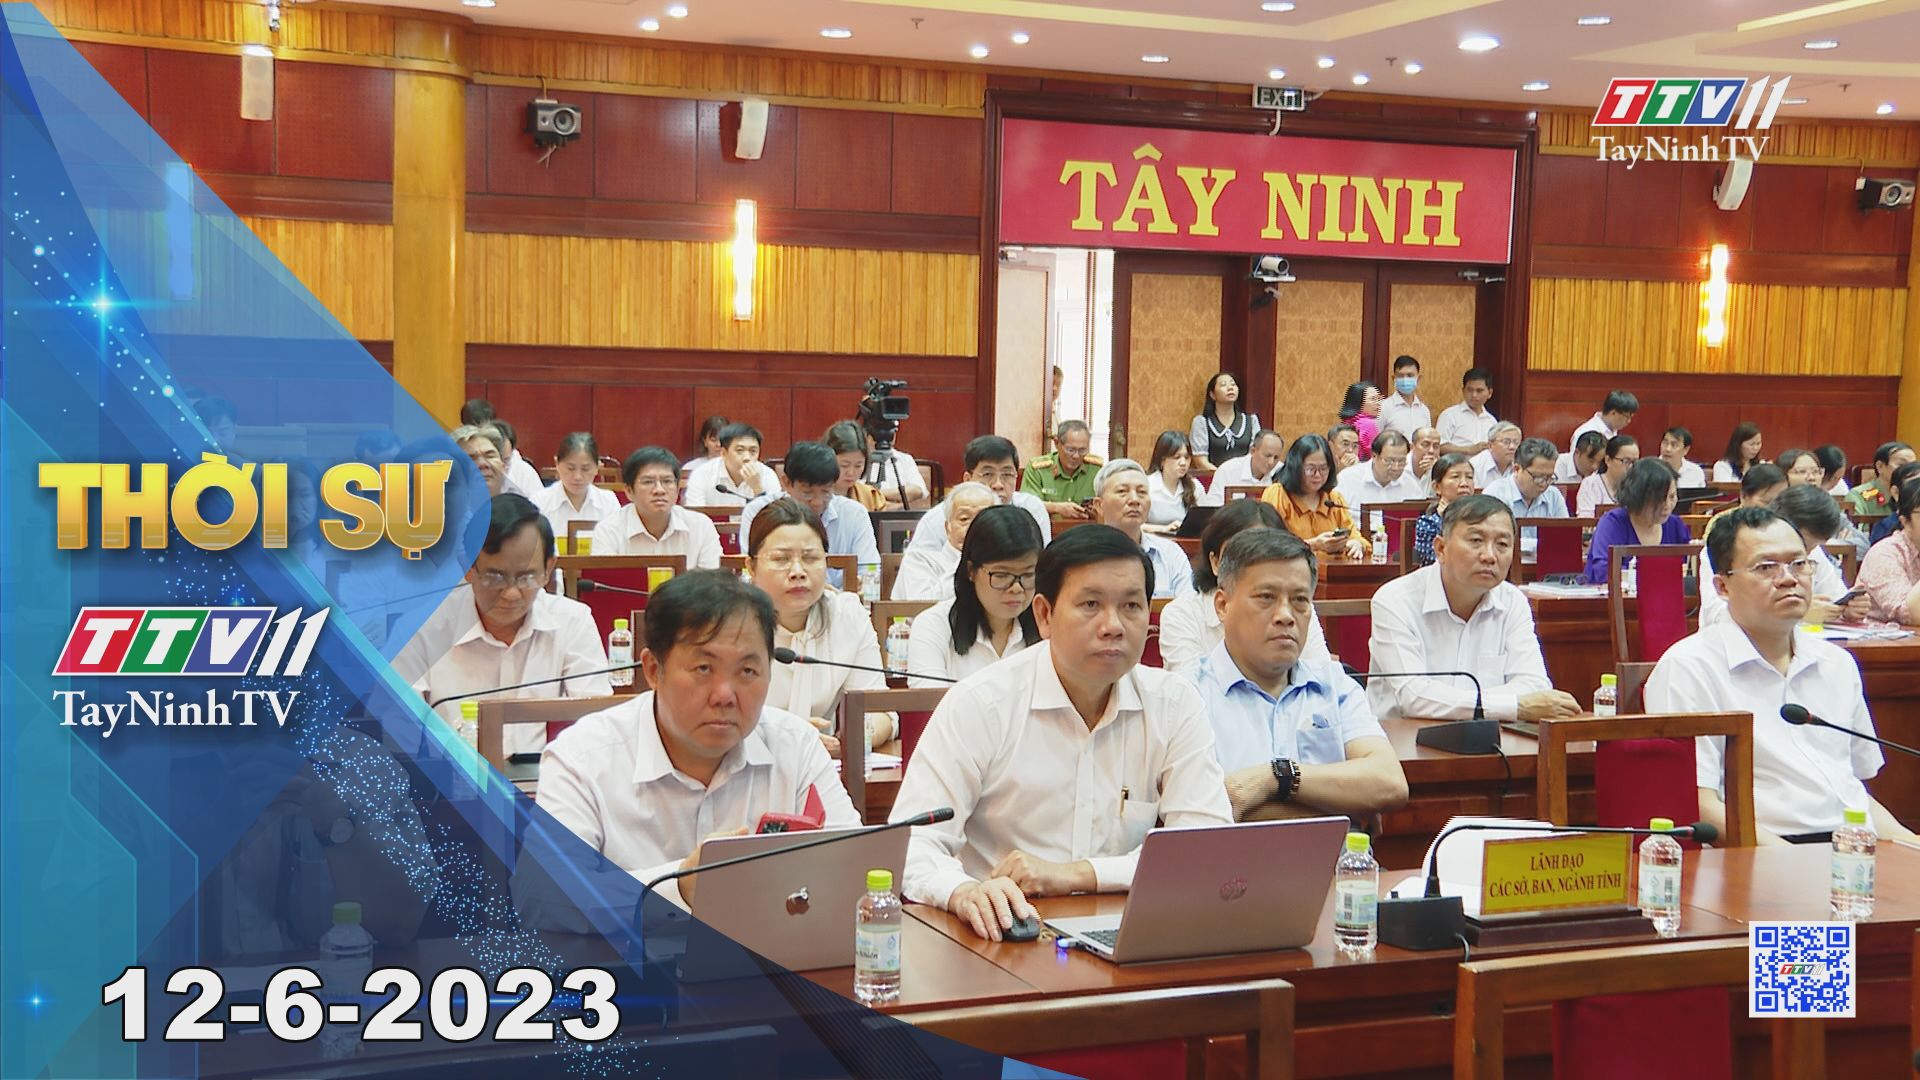 Thời sự Tây Ninh 12-6-2023 | Tin tức hôm nay | TayNinhTV